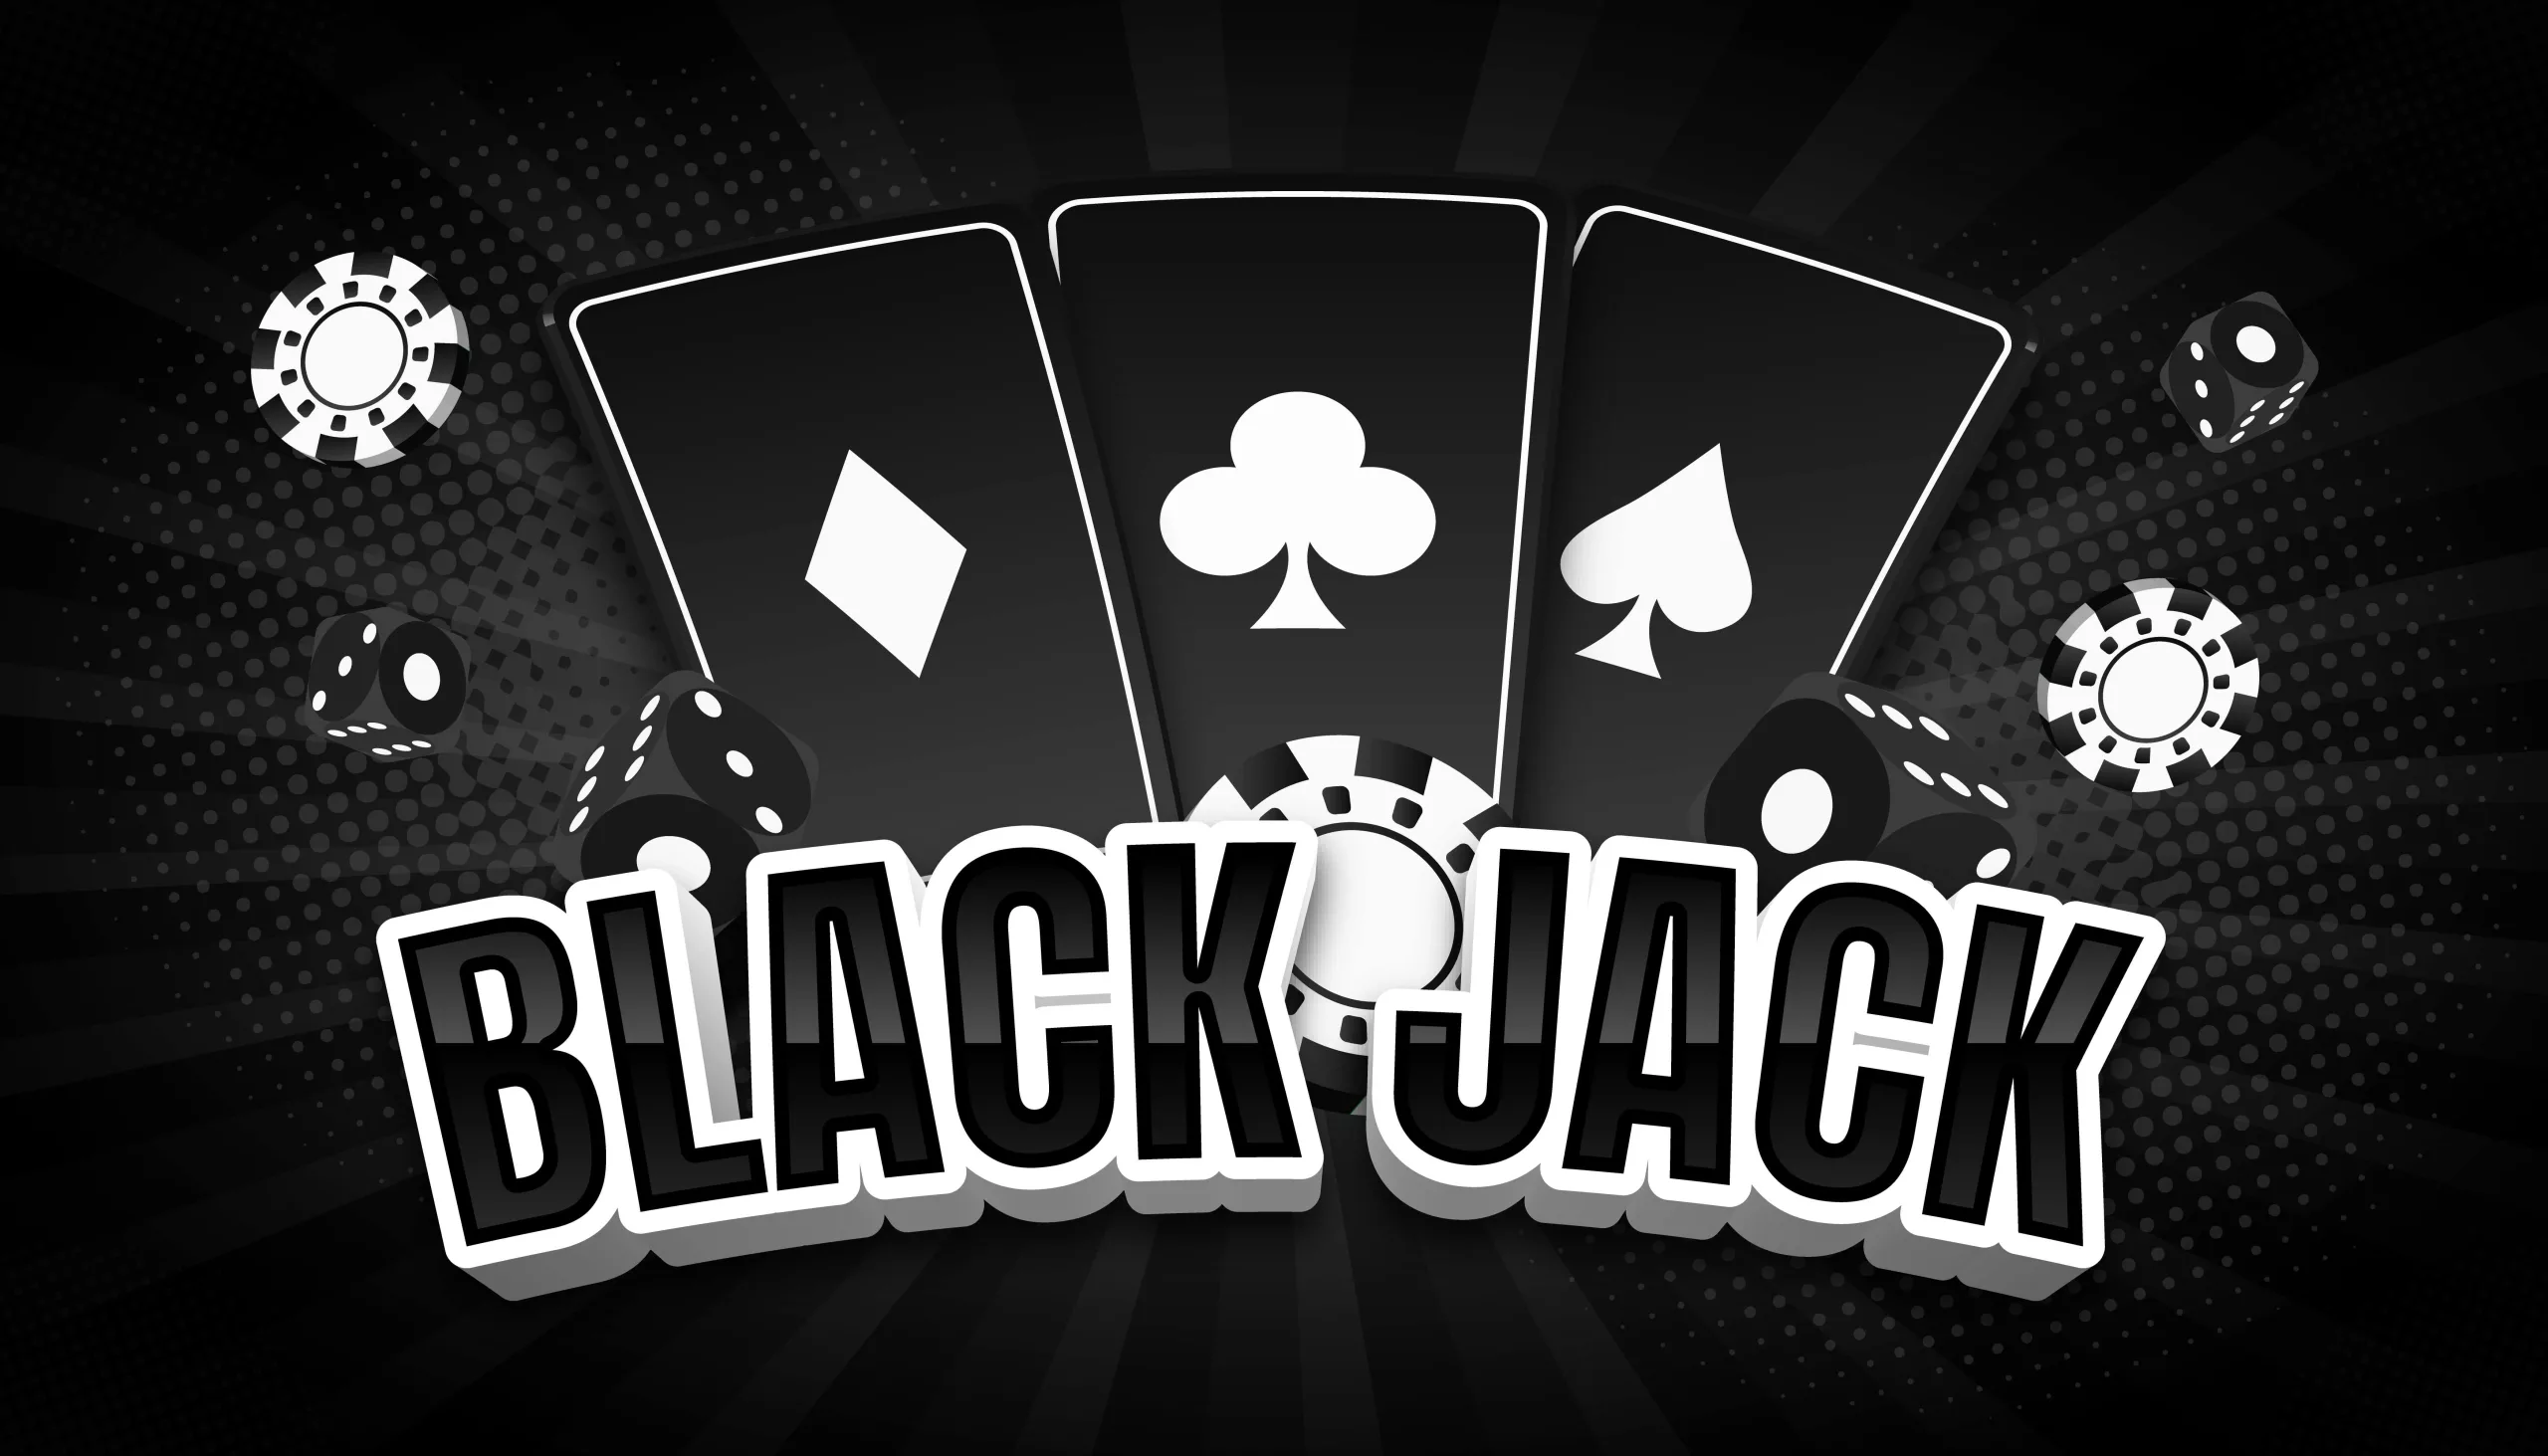 blackjack written in style